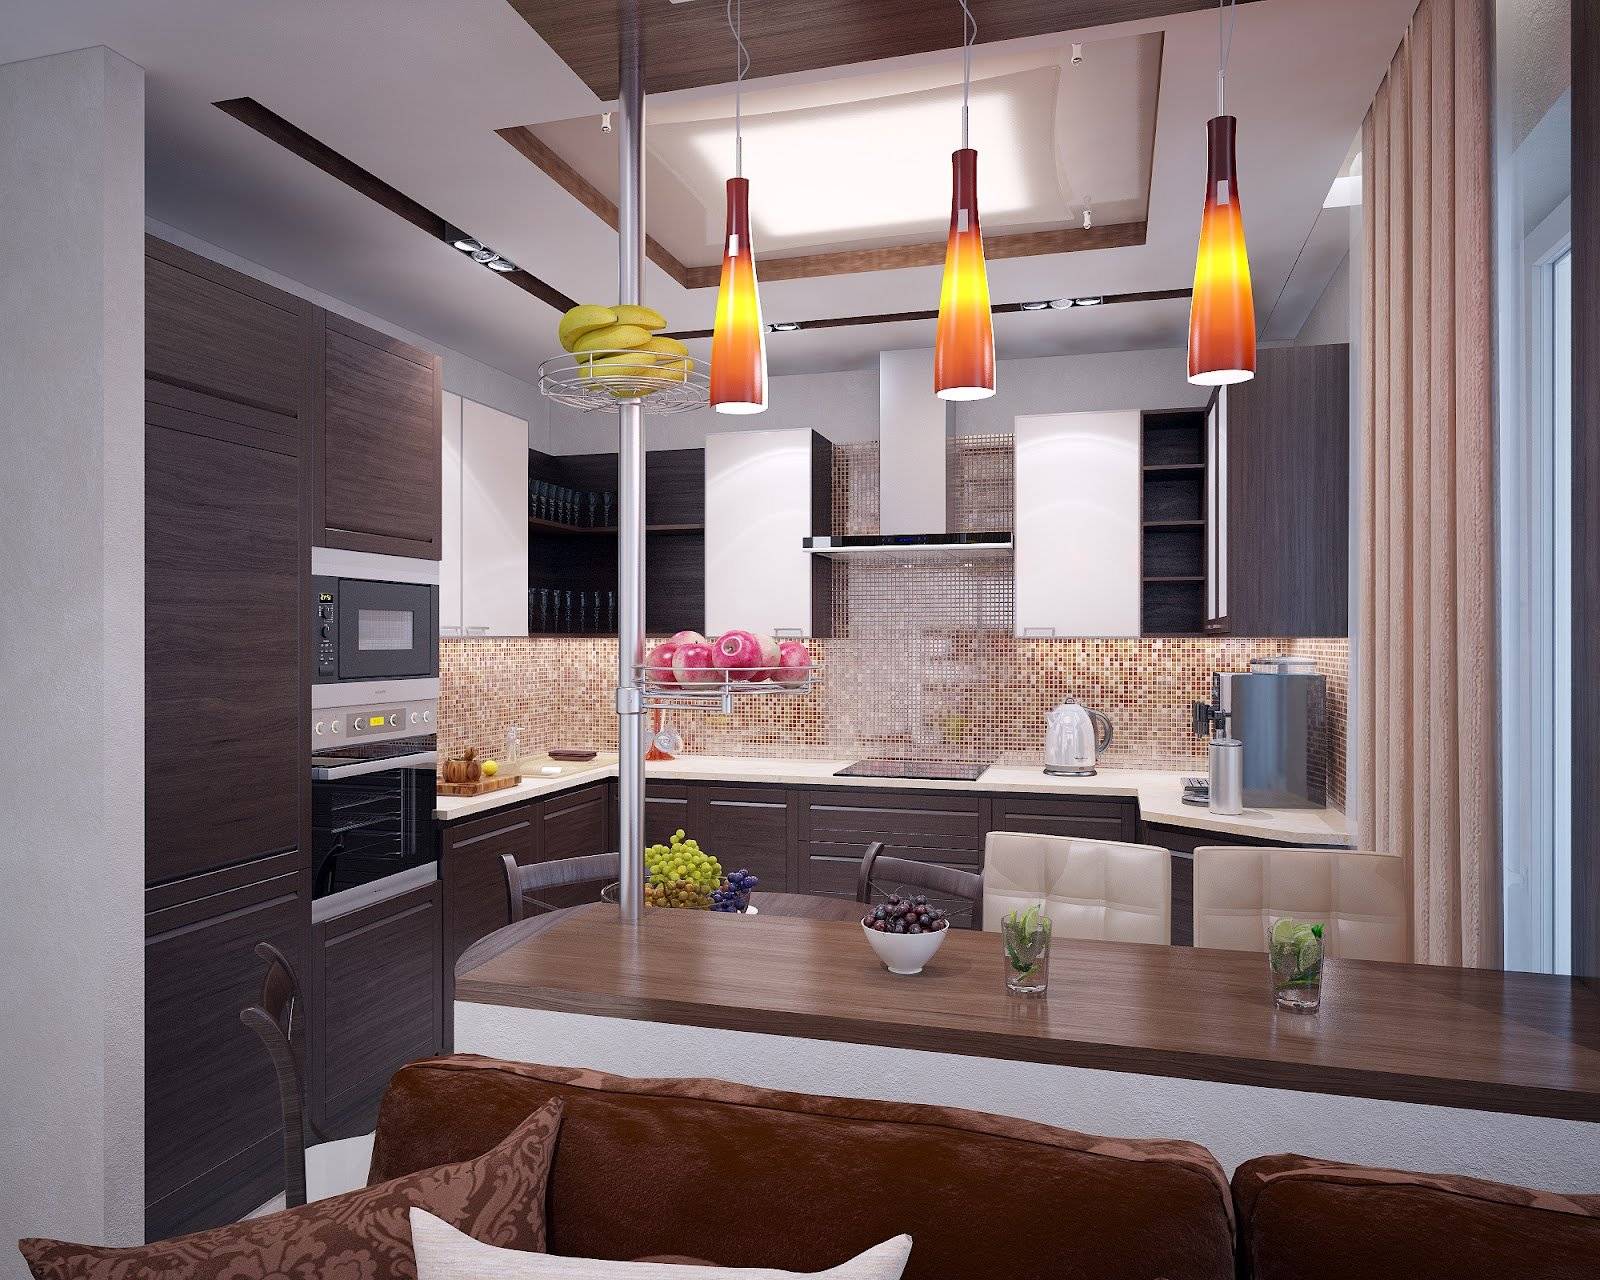 Дизайн кухни 10 кв метров: планировка, цветовая гамма, выбор стиля